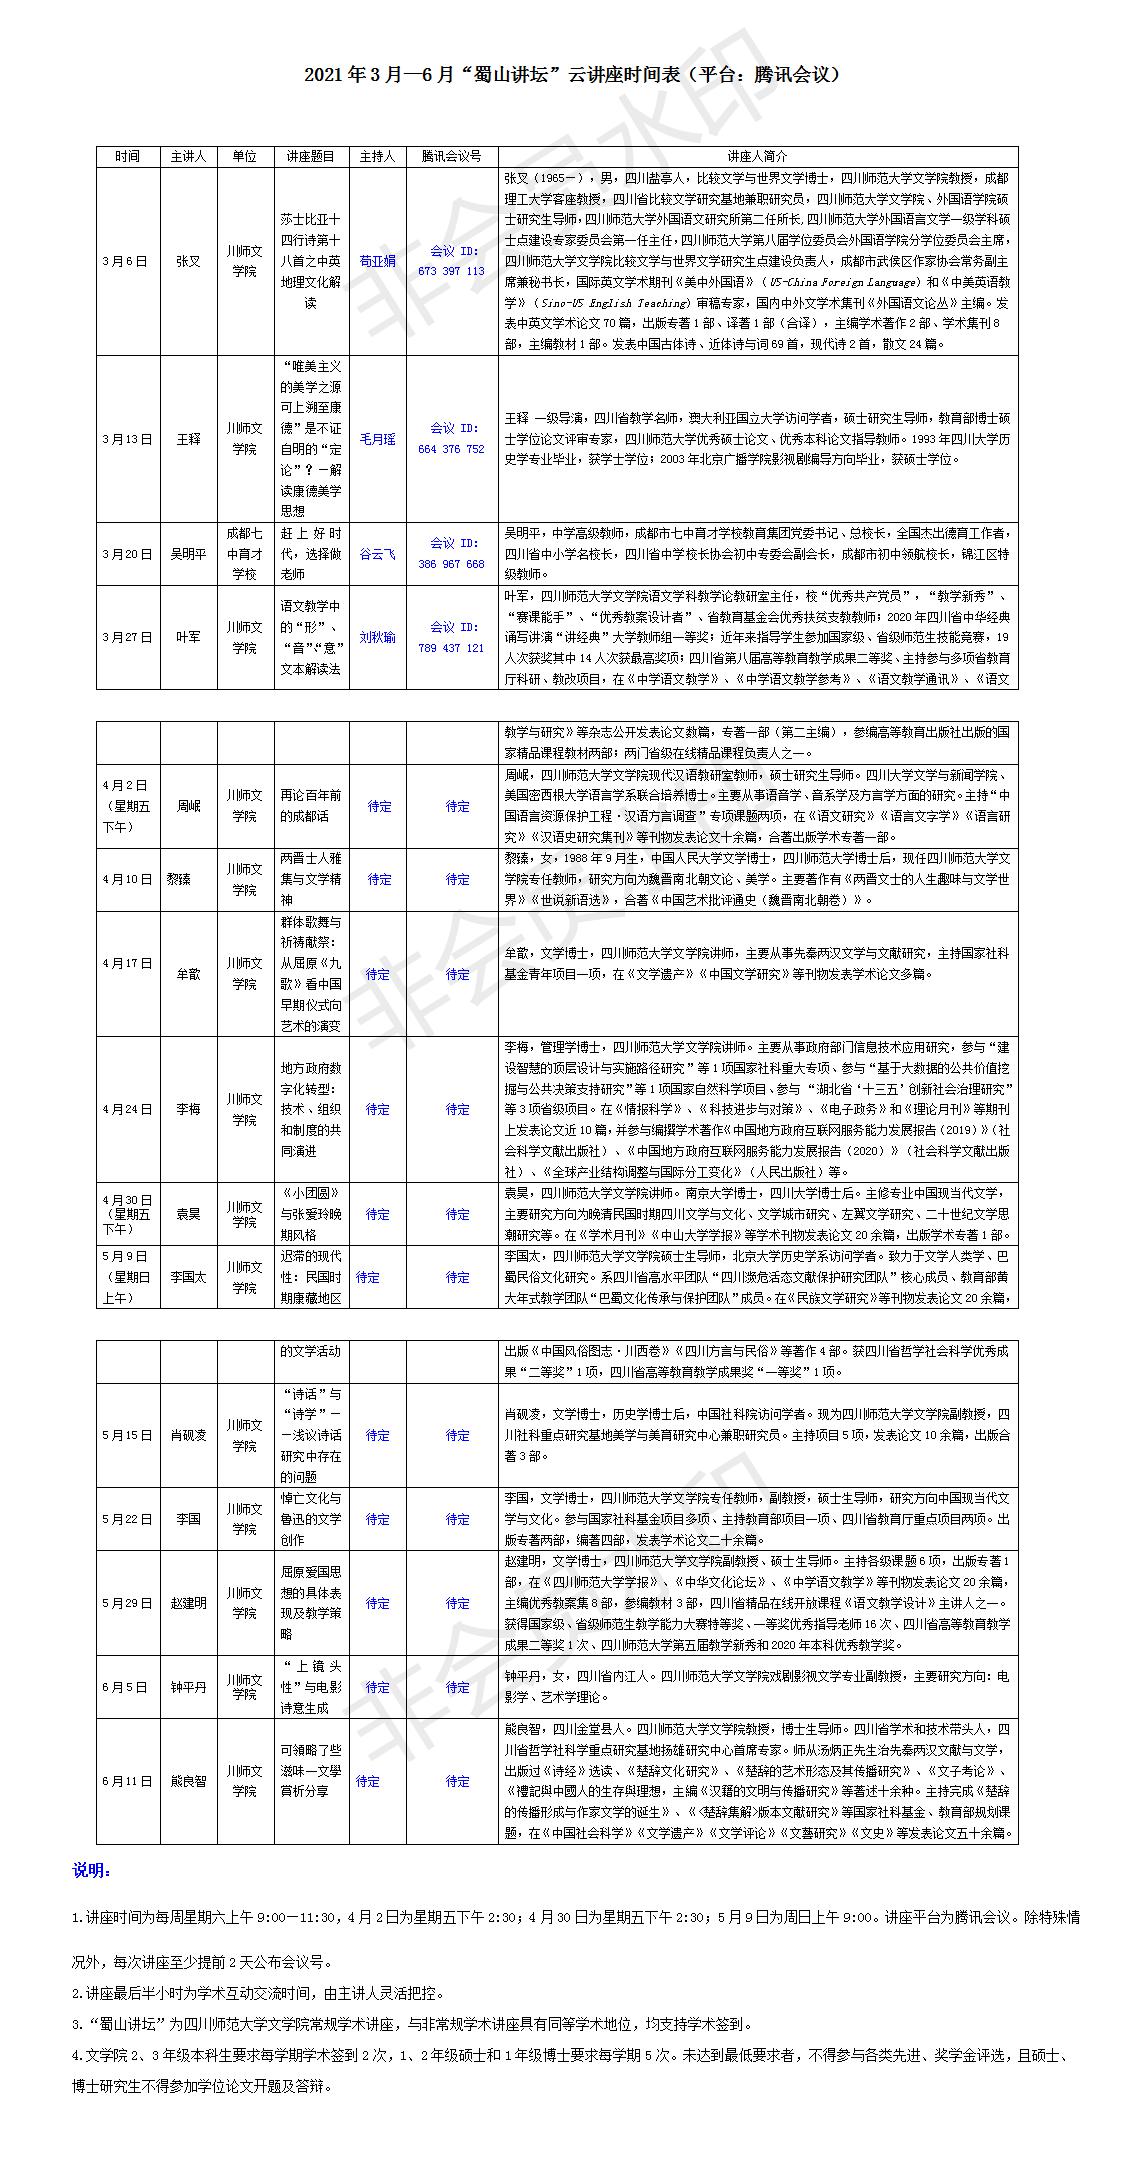 2021年3-6月蜀山讲坛讲座安排（做大海报用）.jpg